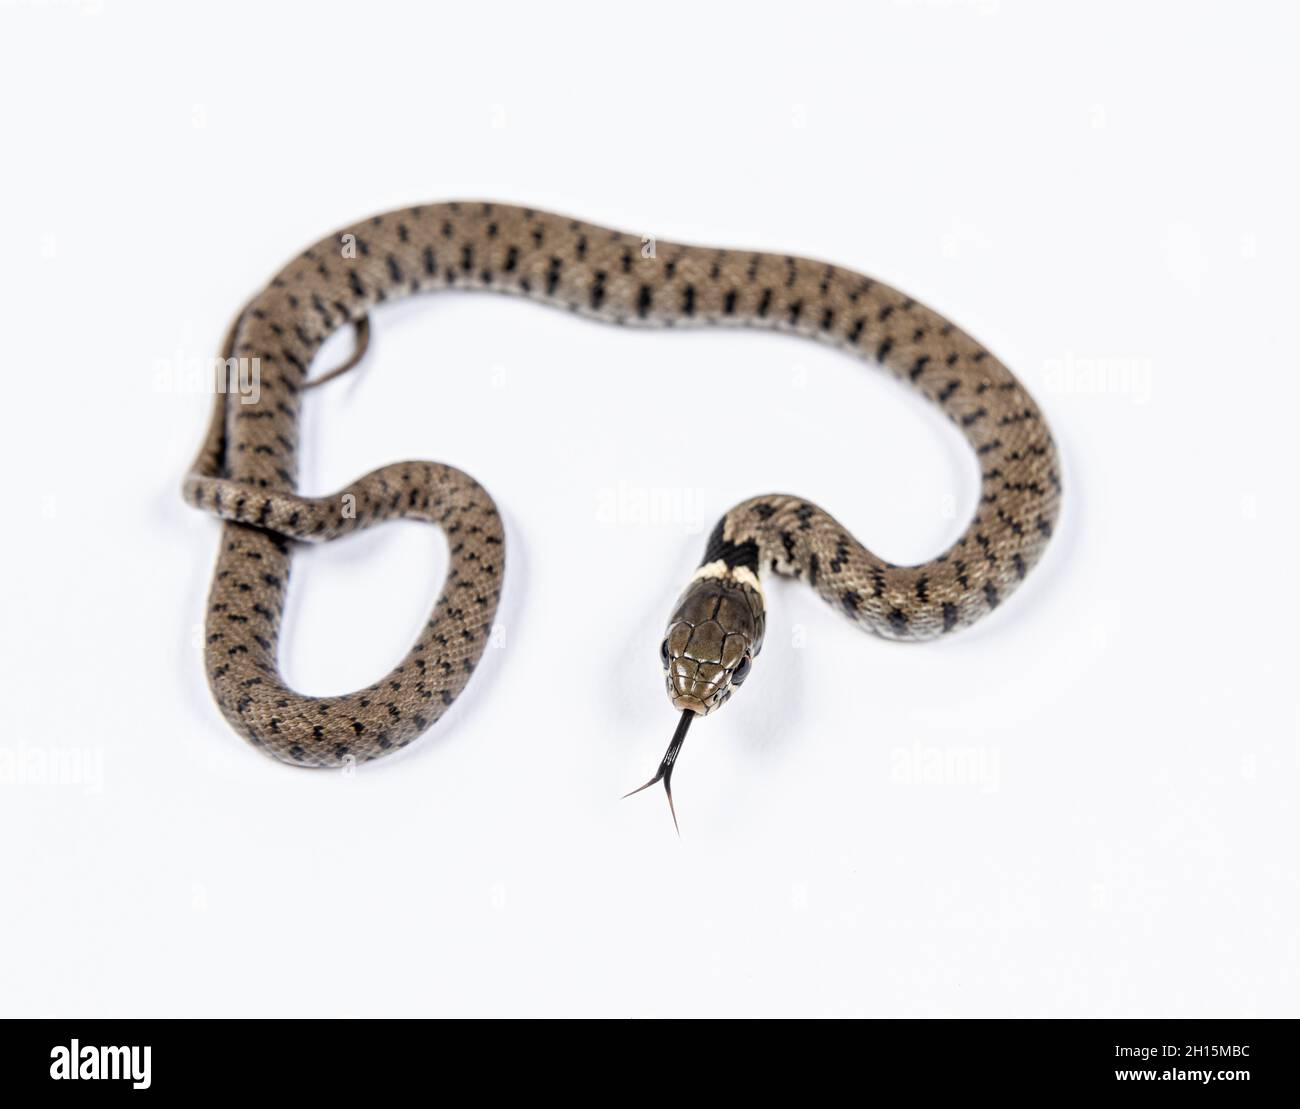 Grass snake, Natrix natrix, against a white background Stock Photo